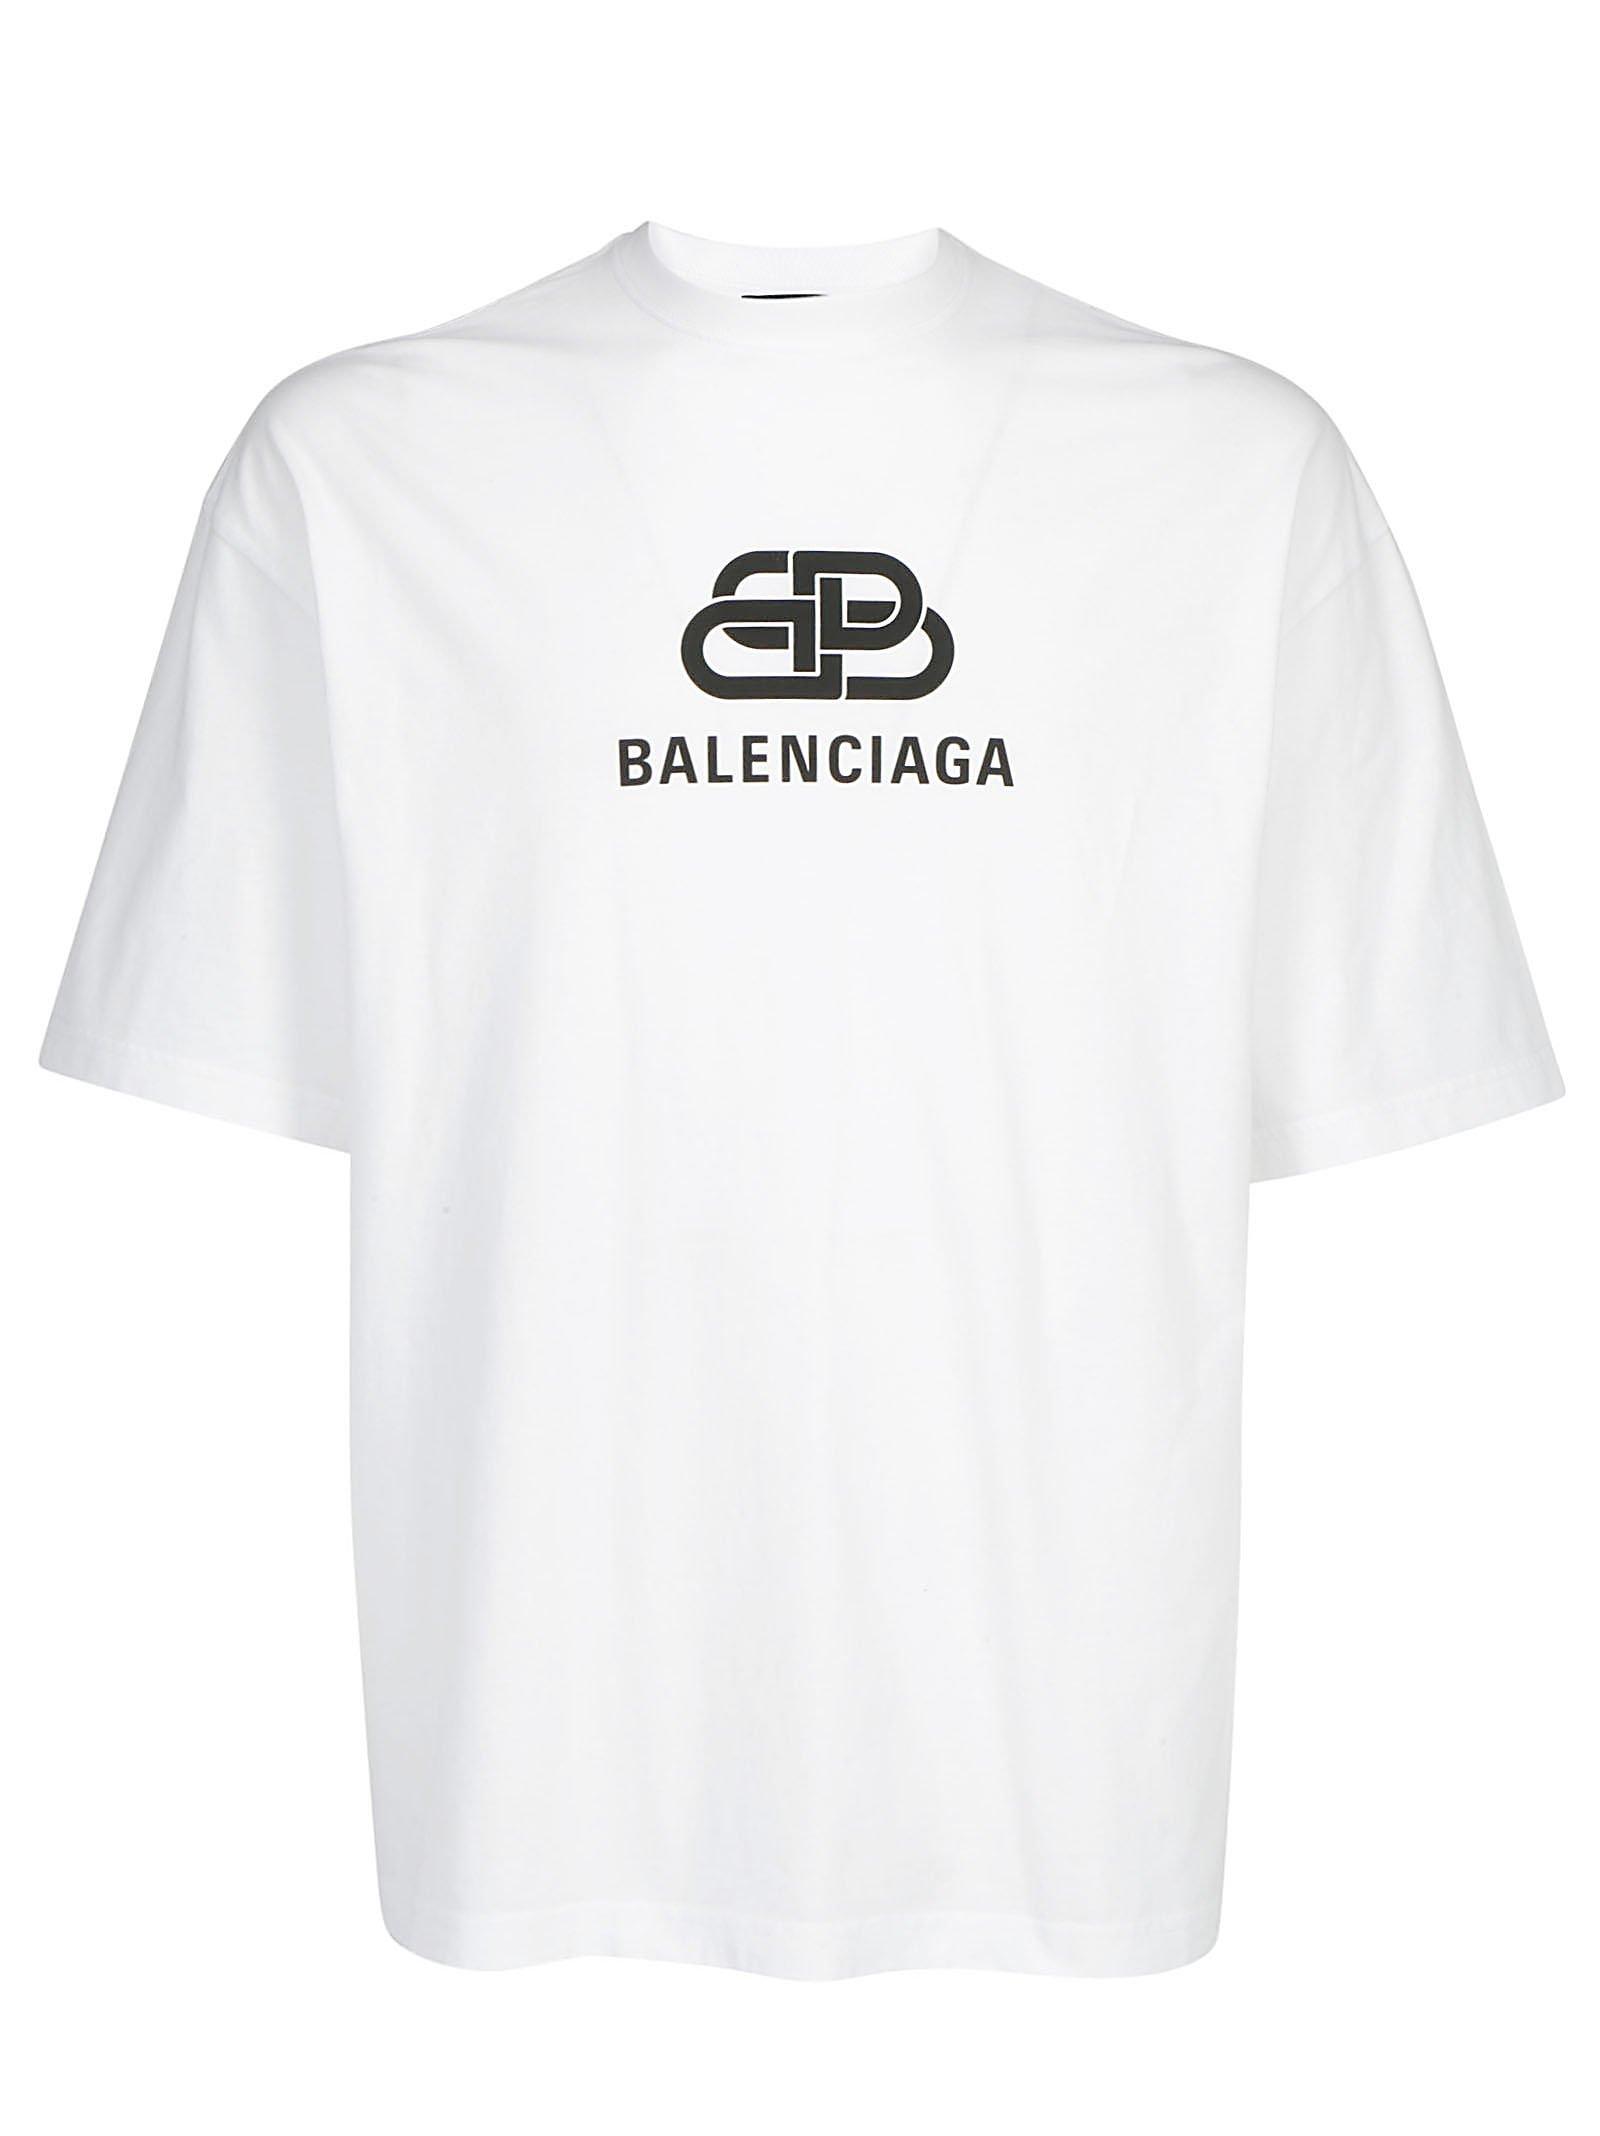 Sjov apologi Skrøbelig Balenciaga Bb T-shirt in White for Men | Lyst